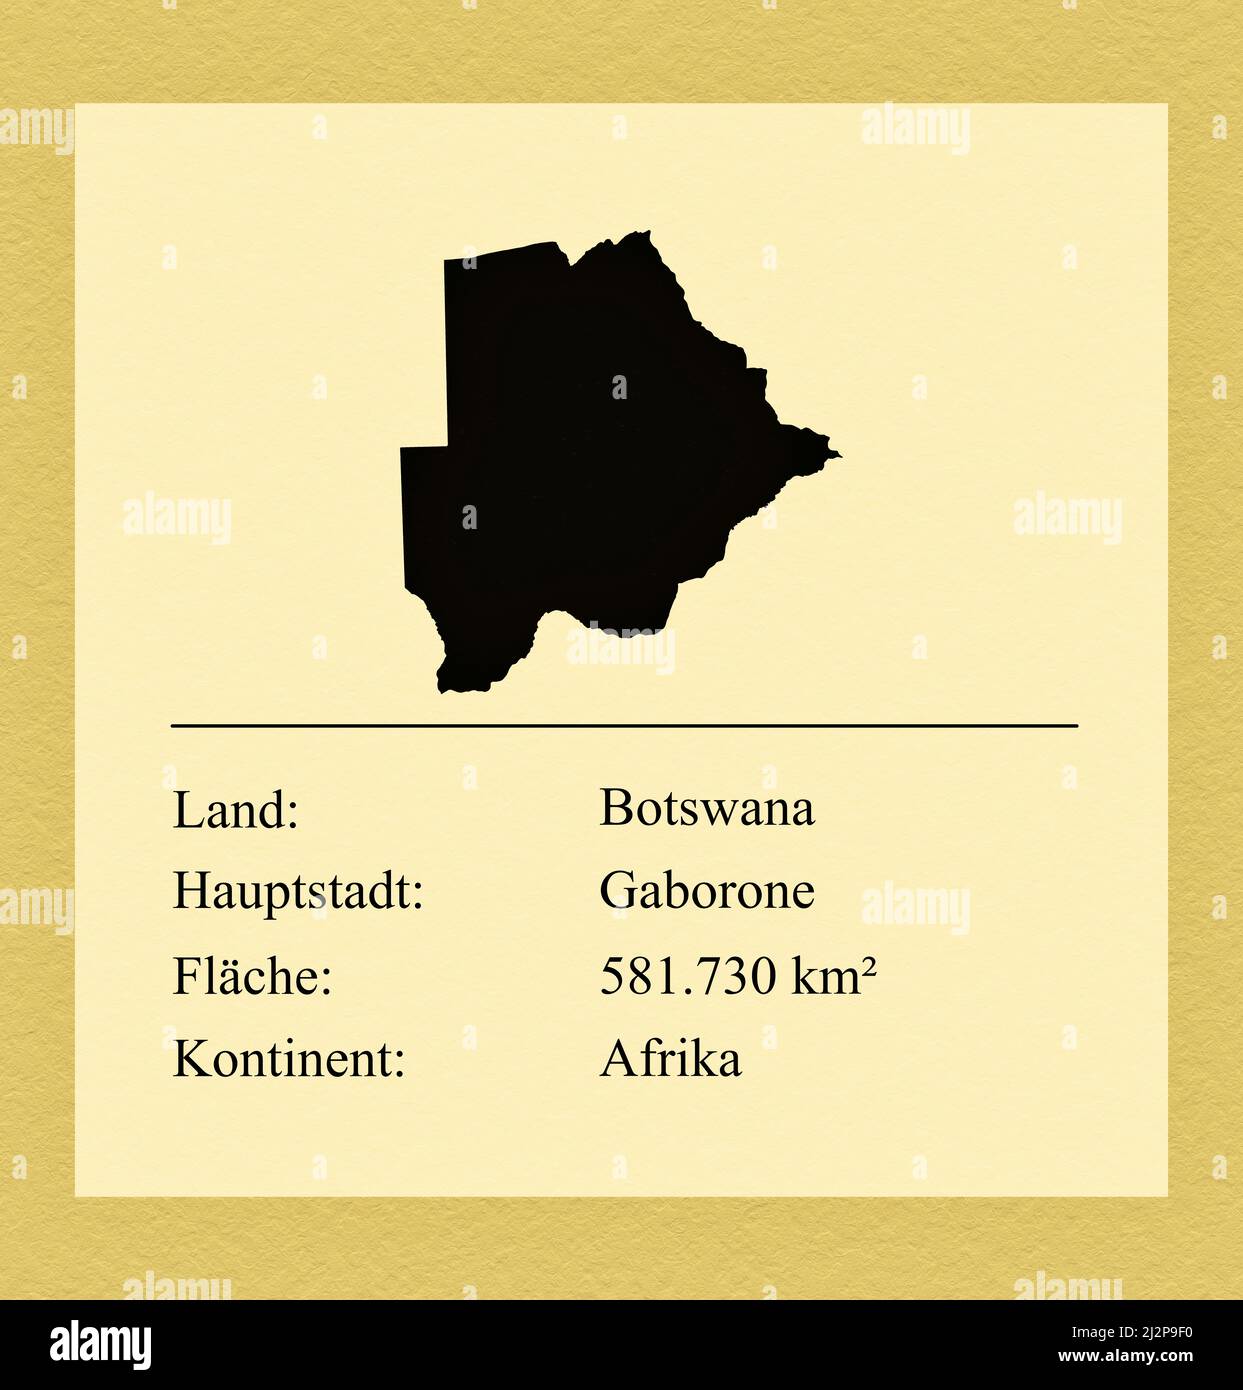 Umrisse des Landes Botswana, darunter ein kleiner Steckbrief mit Ländernamen, Hauptstadt, Fläche und Kontinent Foto de stock